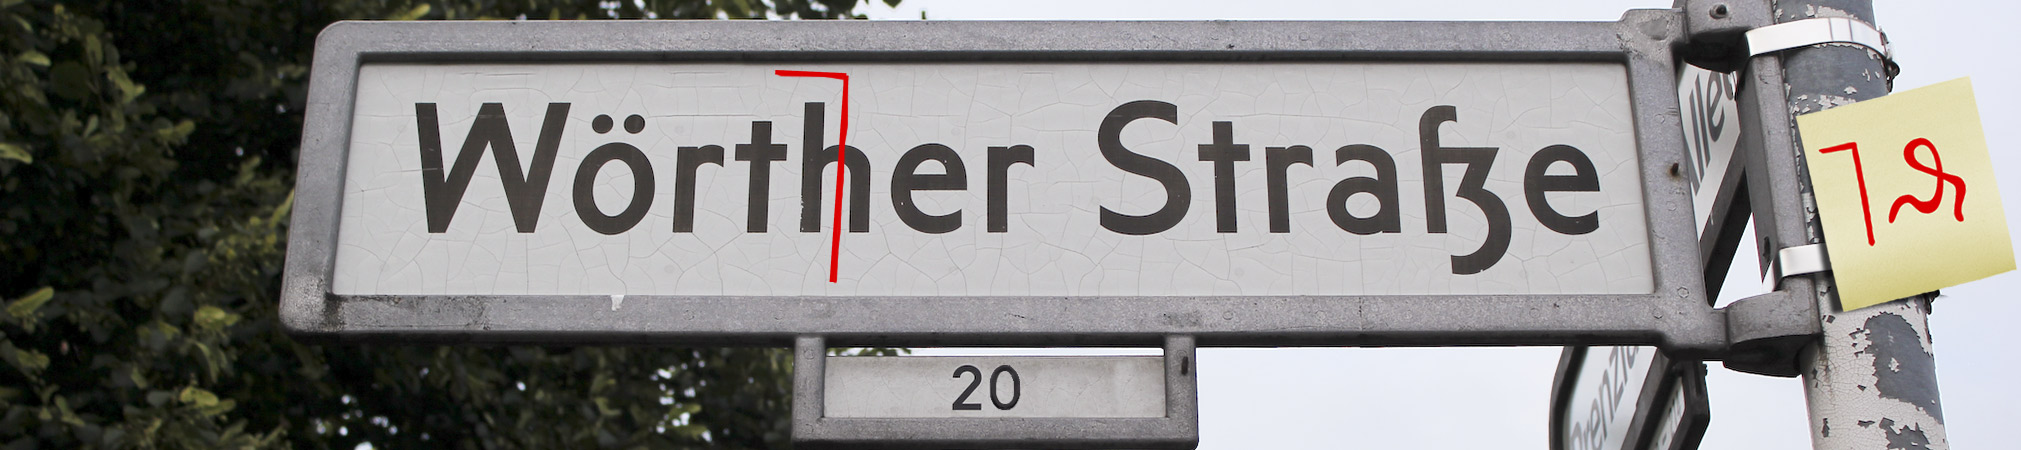 Wörther Straßenschild, mit Korrekturzeichen Korrektur zu Wörter; Foto © Laura Maren Knauf, montage: mo-ment 